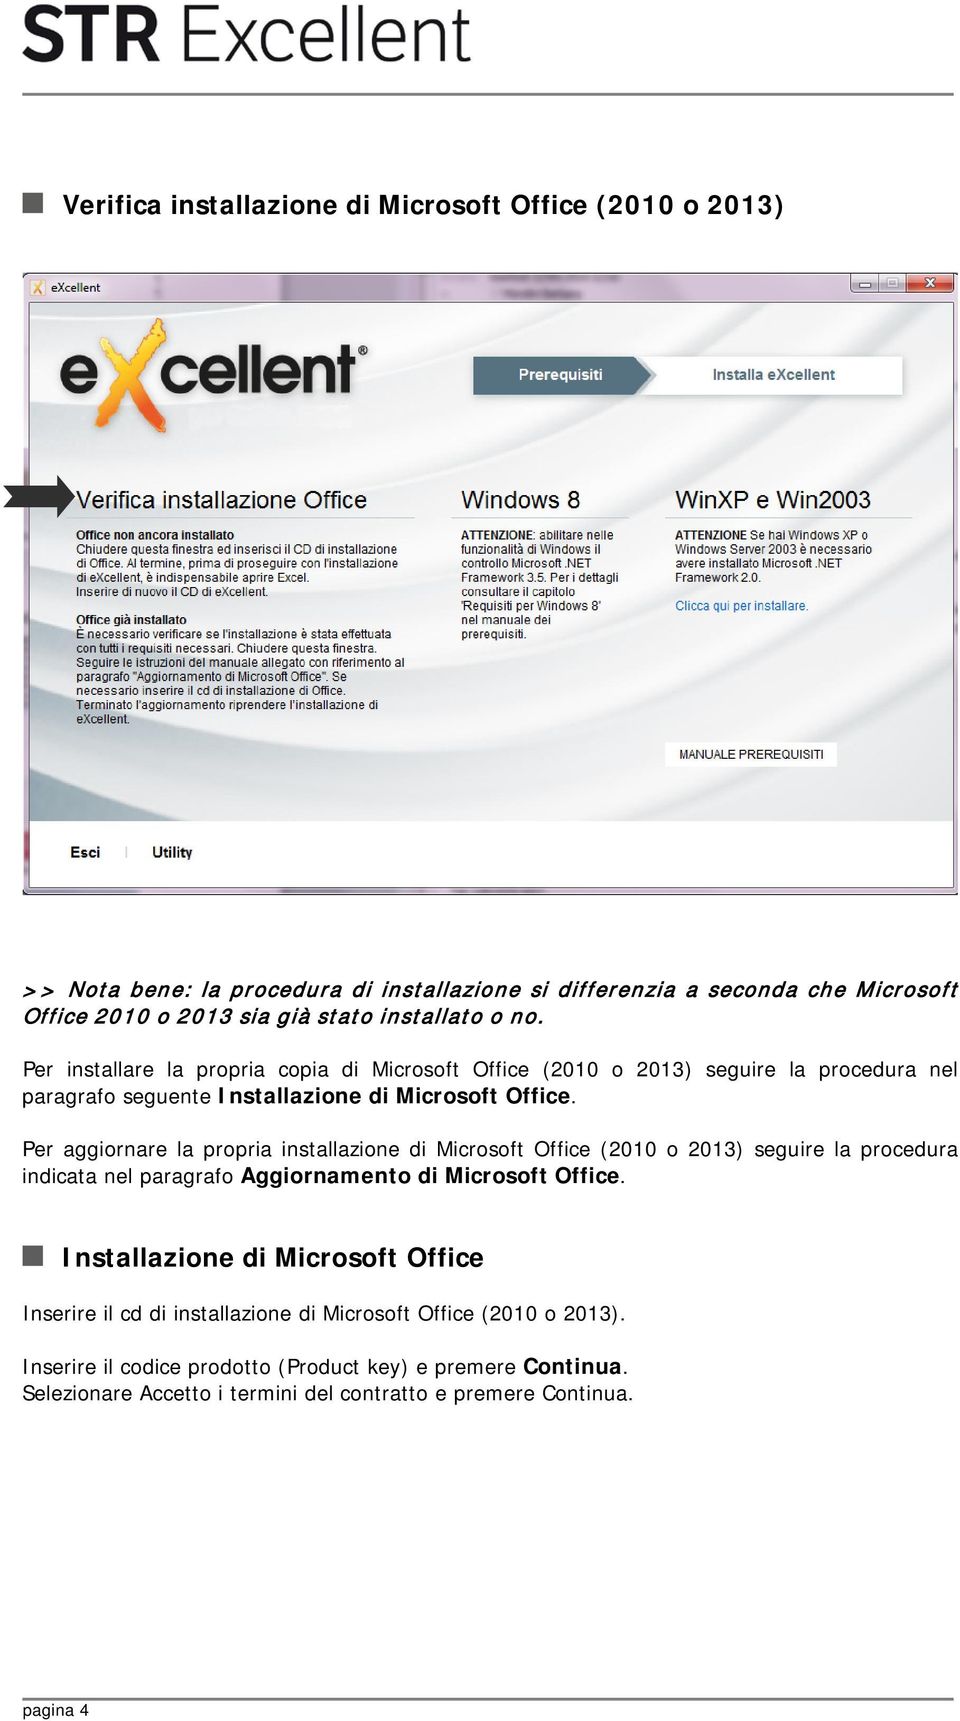 Per aggiornare la propria installazione di Microsoft Office (2010 o 2013) seguire la procedura indicata nel paragrafo Aggiornamento di Microsoft Office.